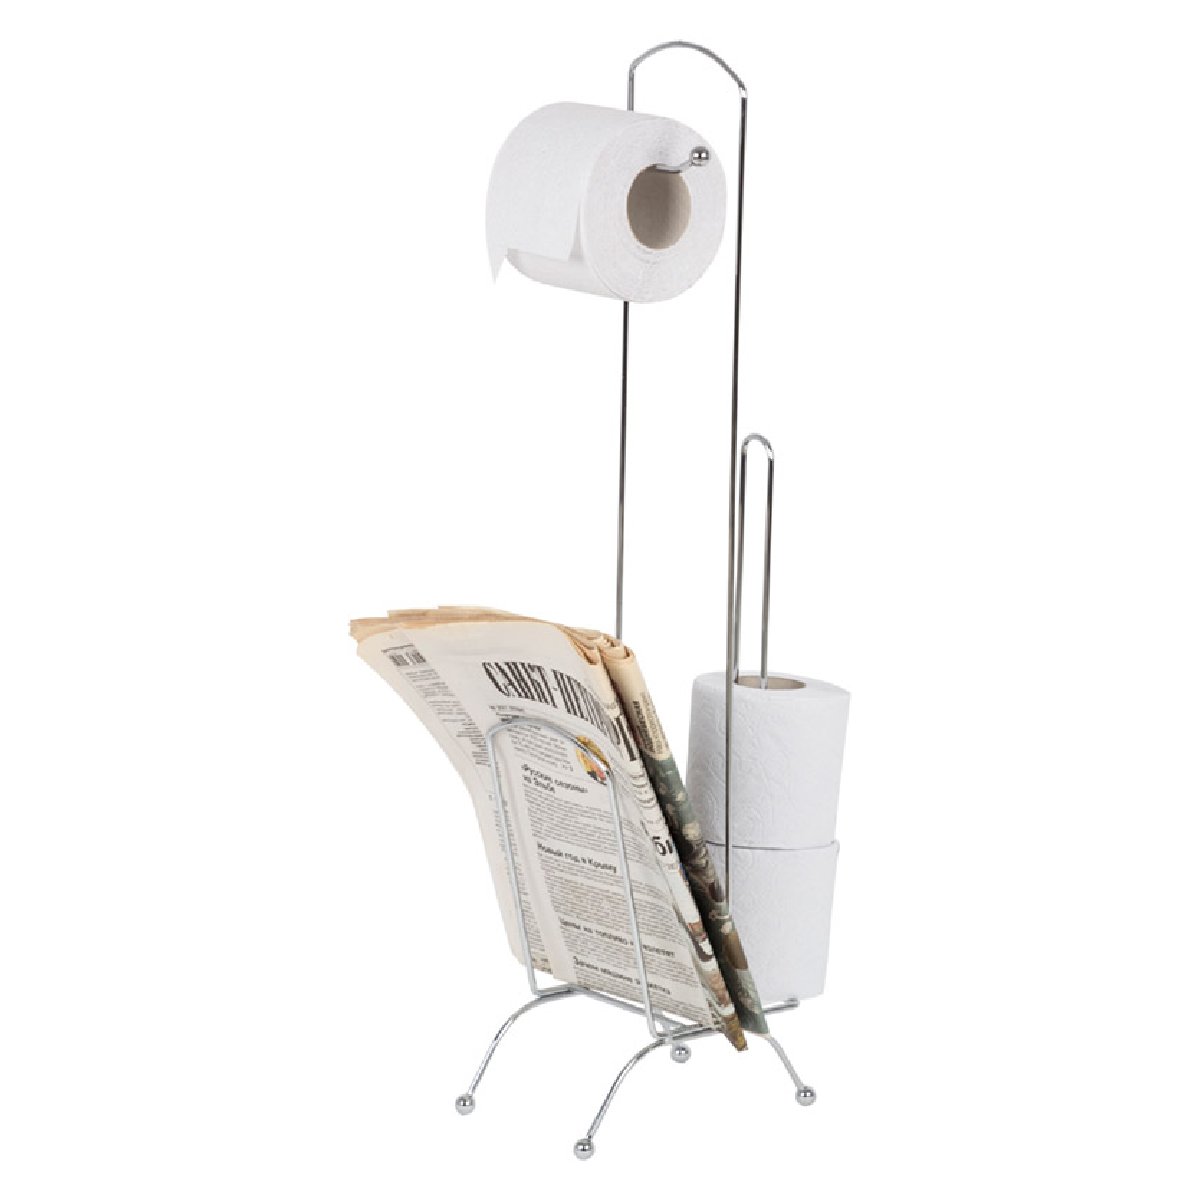 Стойка для туалетной бумаги CHR-483 с держателем для журналов и газет, 66 см (008207)Купить